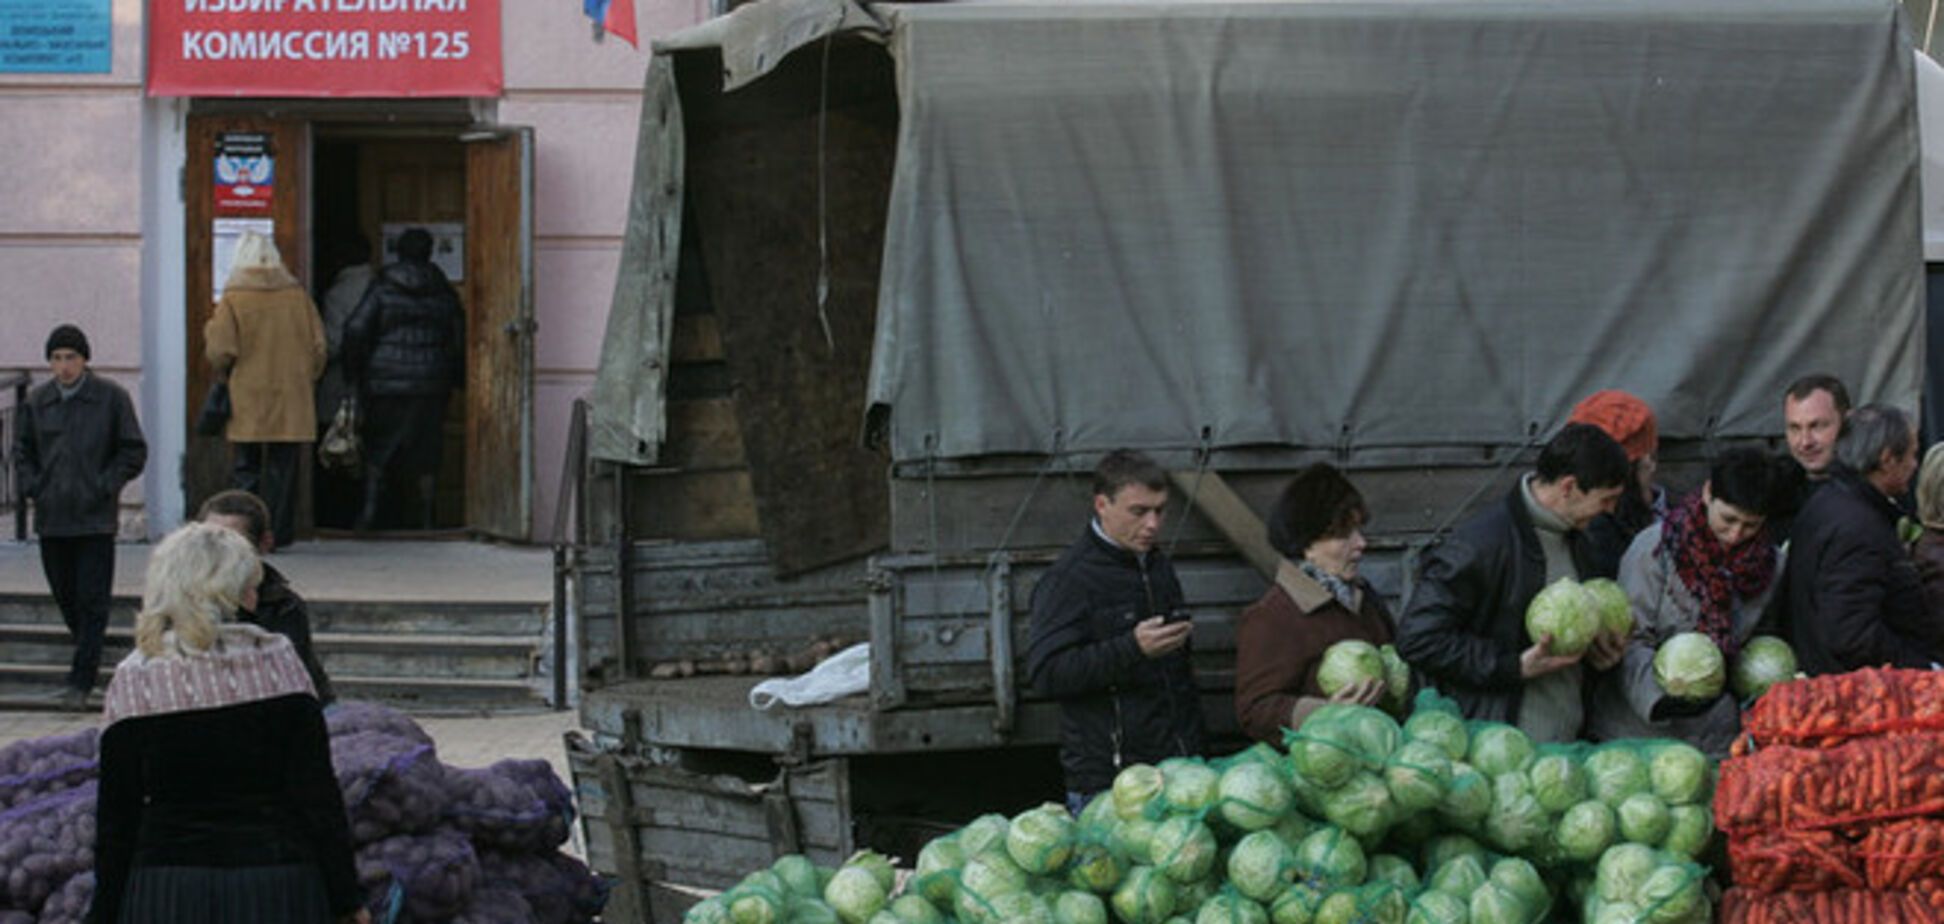 Подробности псевдовыборов в Донецке: картошка по гривне, 'бюллетени' с принтера и боевики на 'участках'